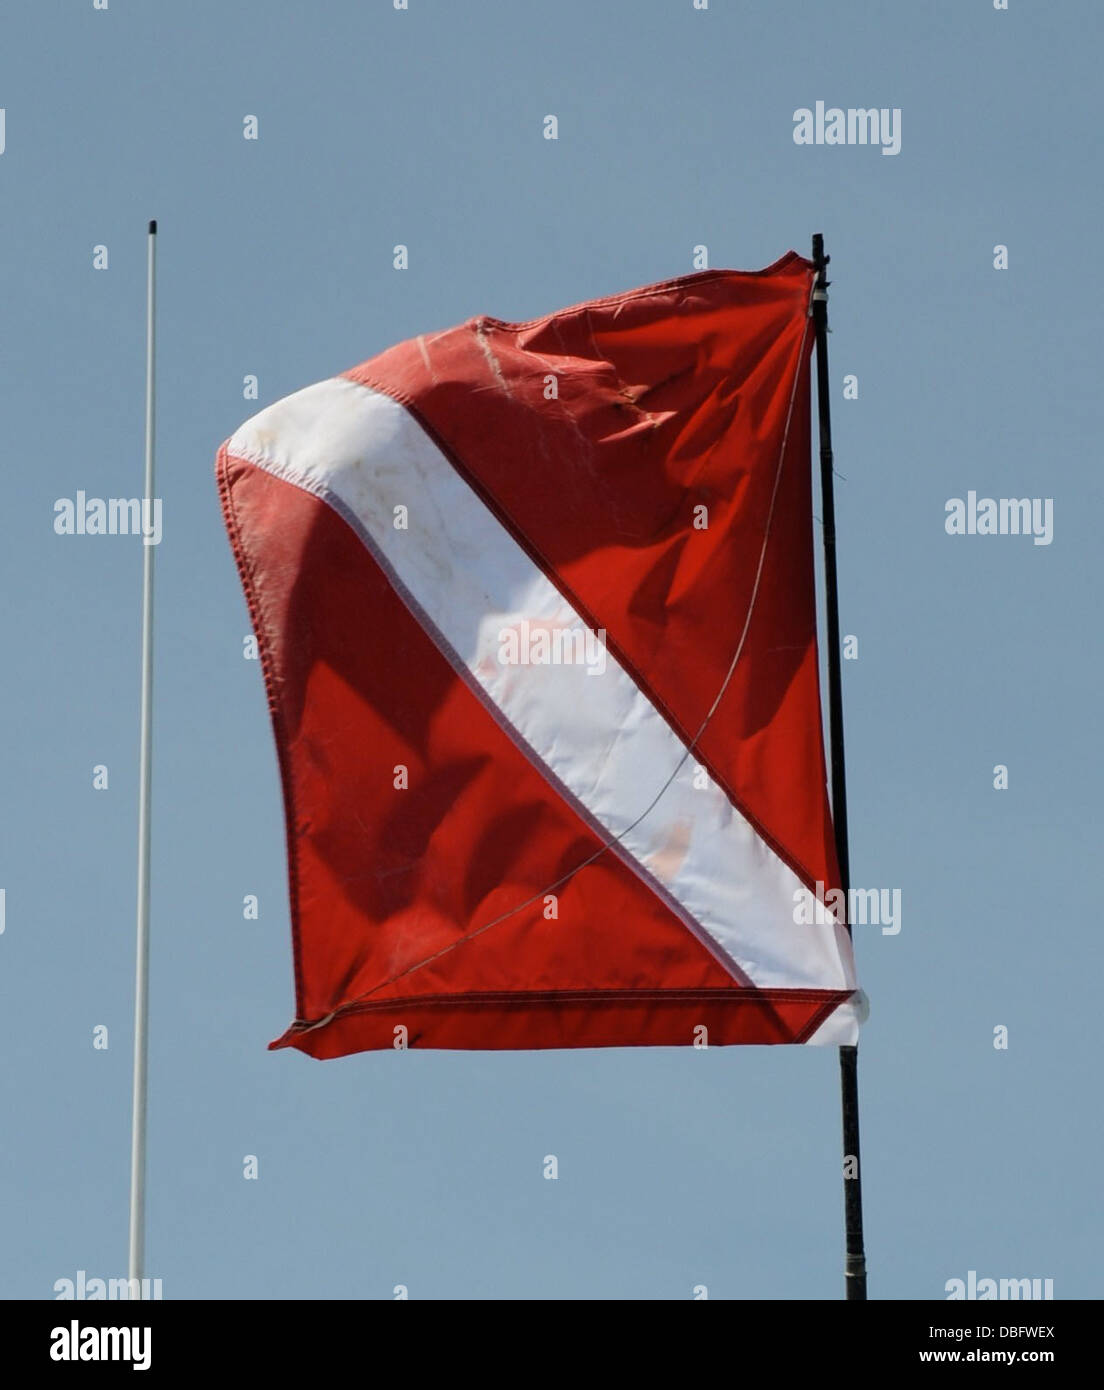 Ein Tauchflagge ist geflogen, um eingehende Bootsfahrer eines Tauchers im Wasser während Hummersaison Mini 25. Juli 2013 zu warnen. Freizeit und Hobby-Taucher Fisch für die Languste während eines der kürzesten Angelsaison im Zustand von Florida. Stockfoto